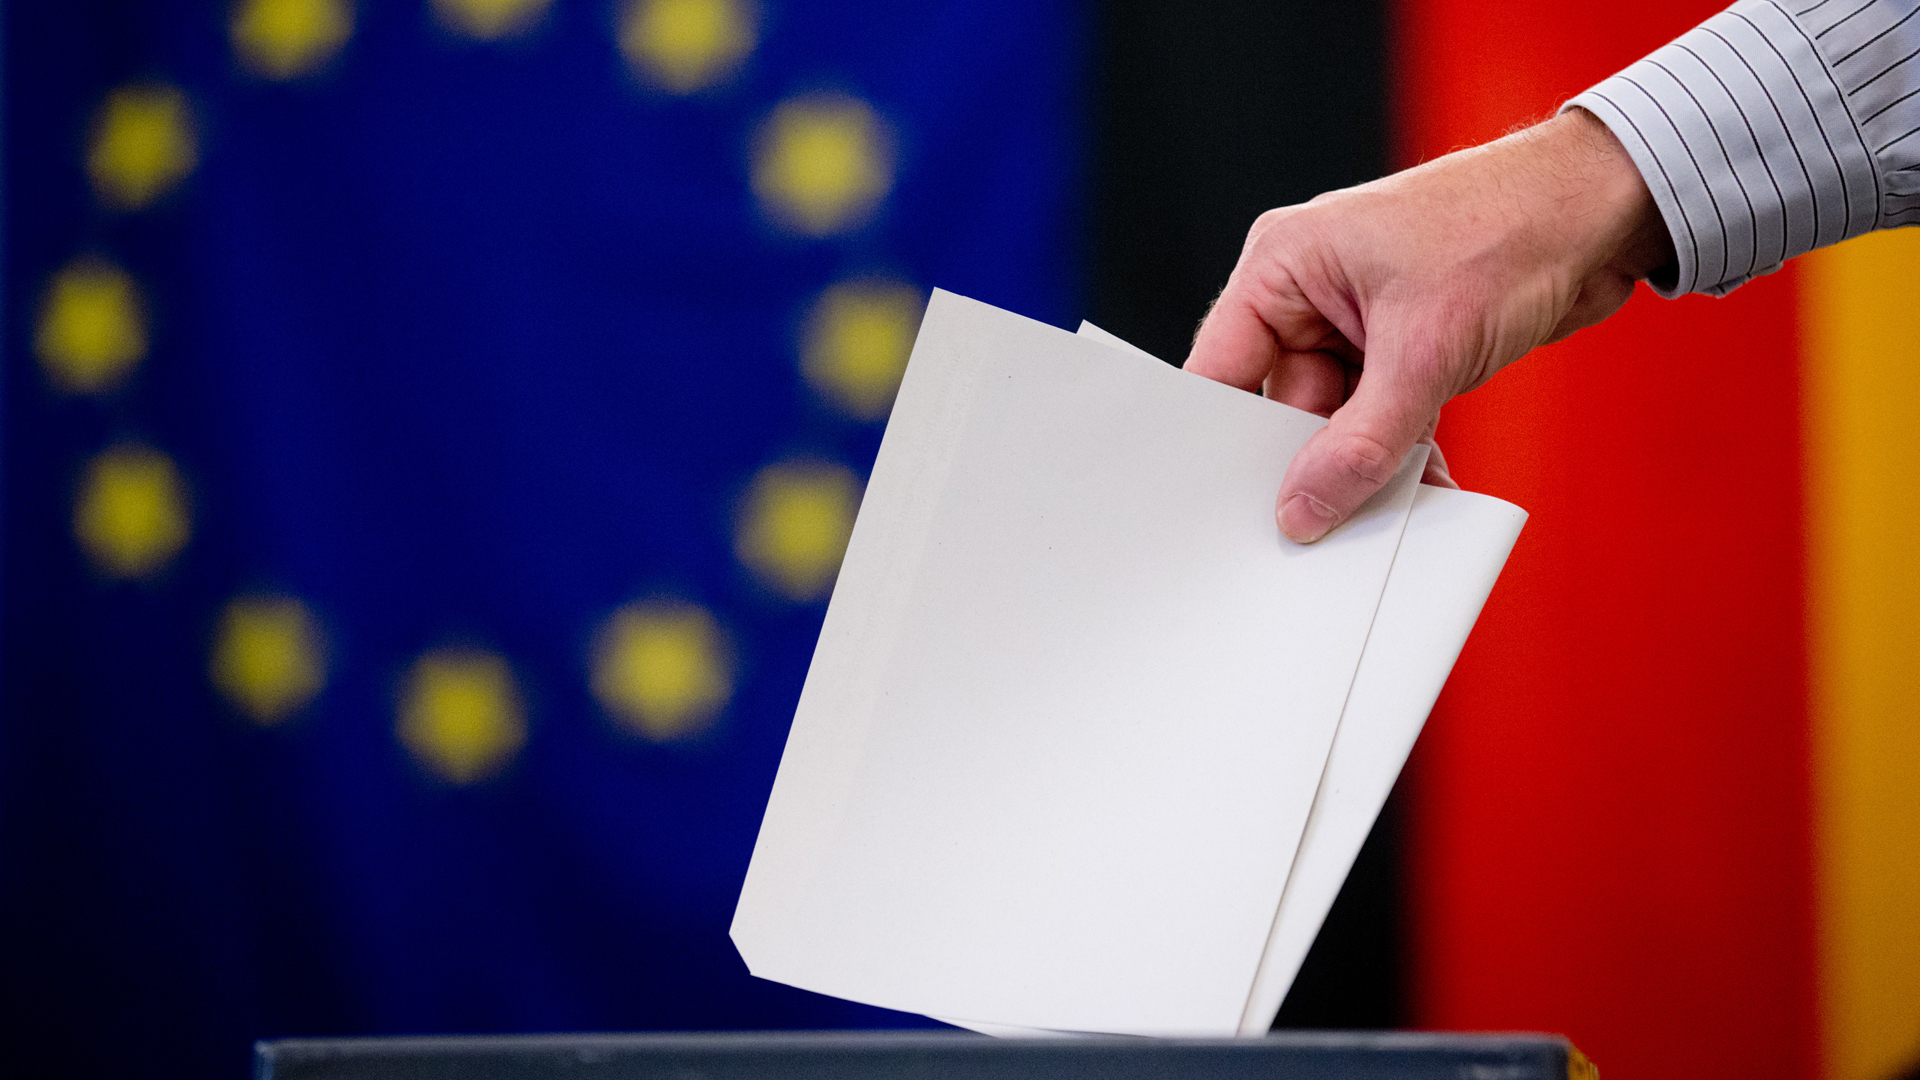 europawahl-2019-41-parteien-stellen-sich-zur-wahl-tagesschau-de